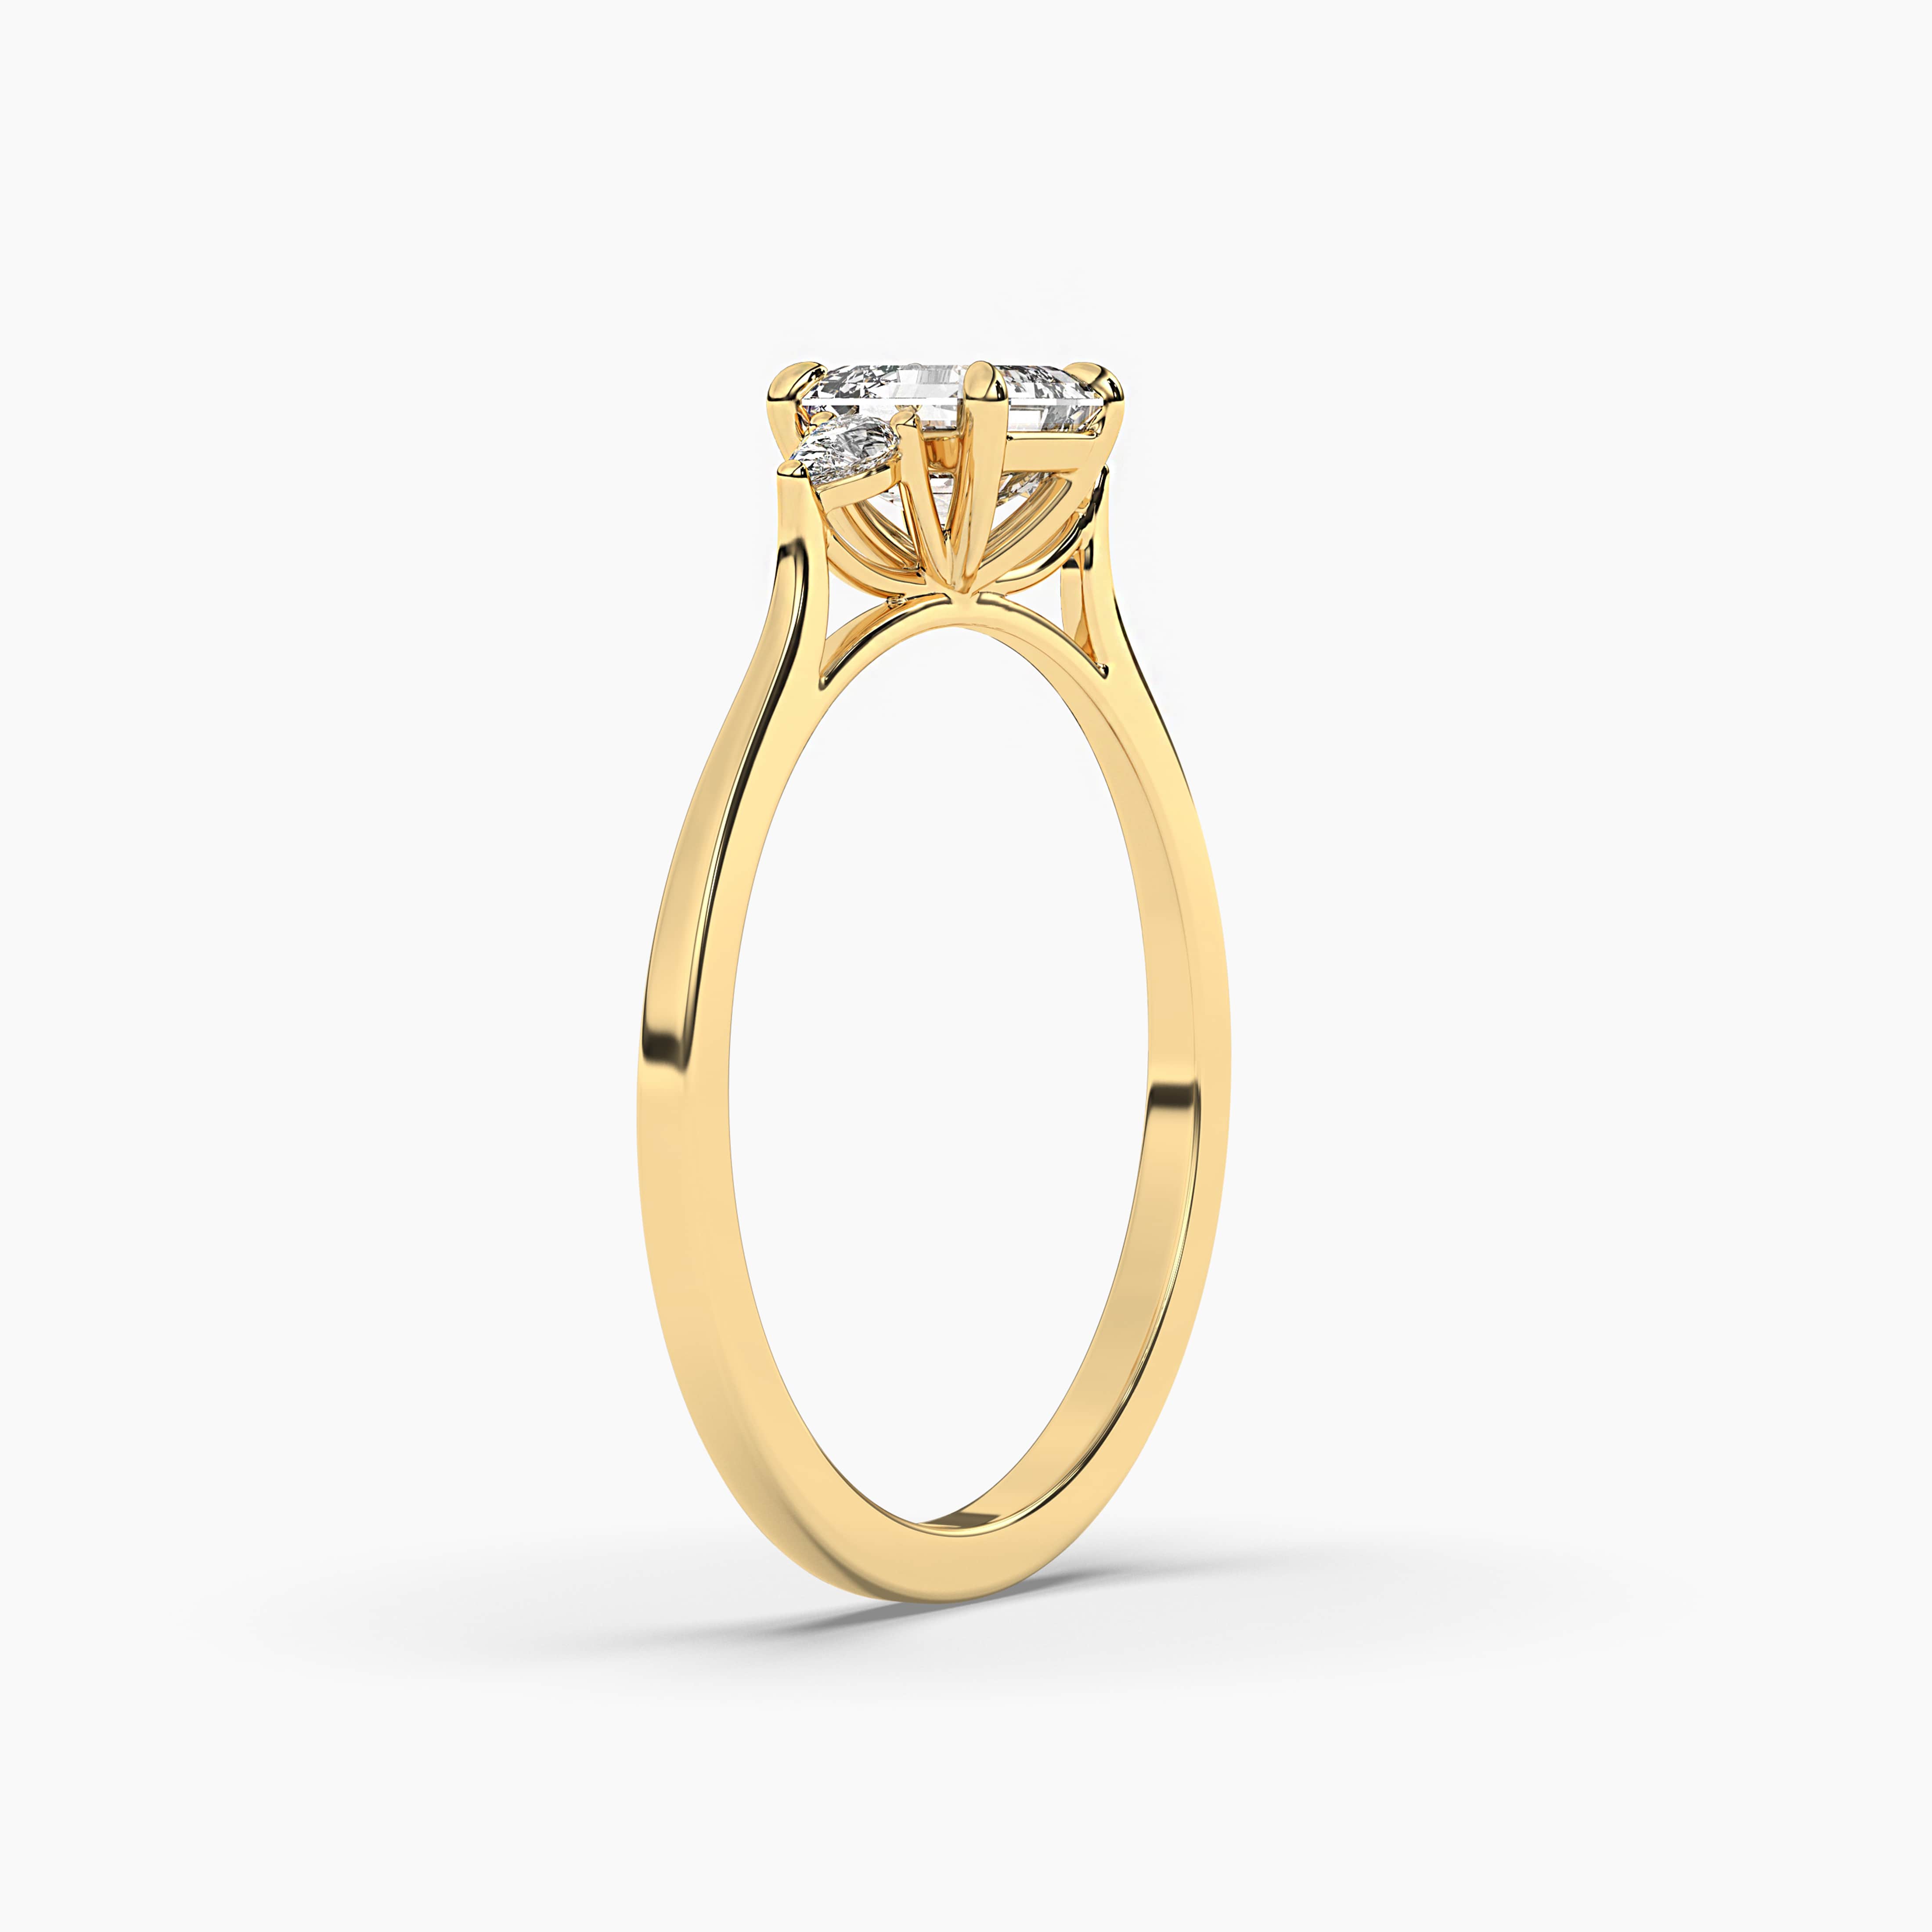 Engagement Ring with an Asscher Cut Yellow Diamond